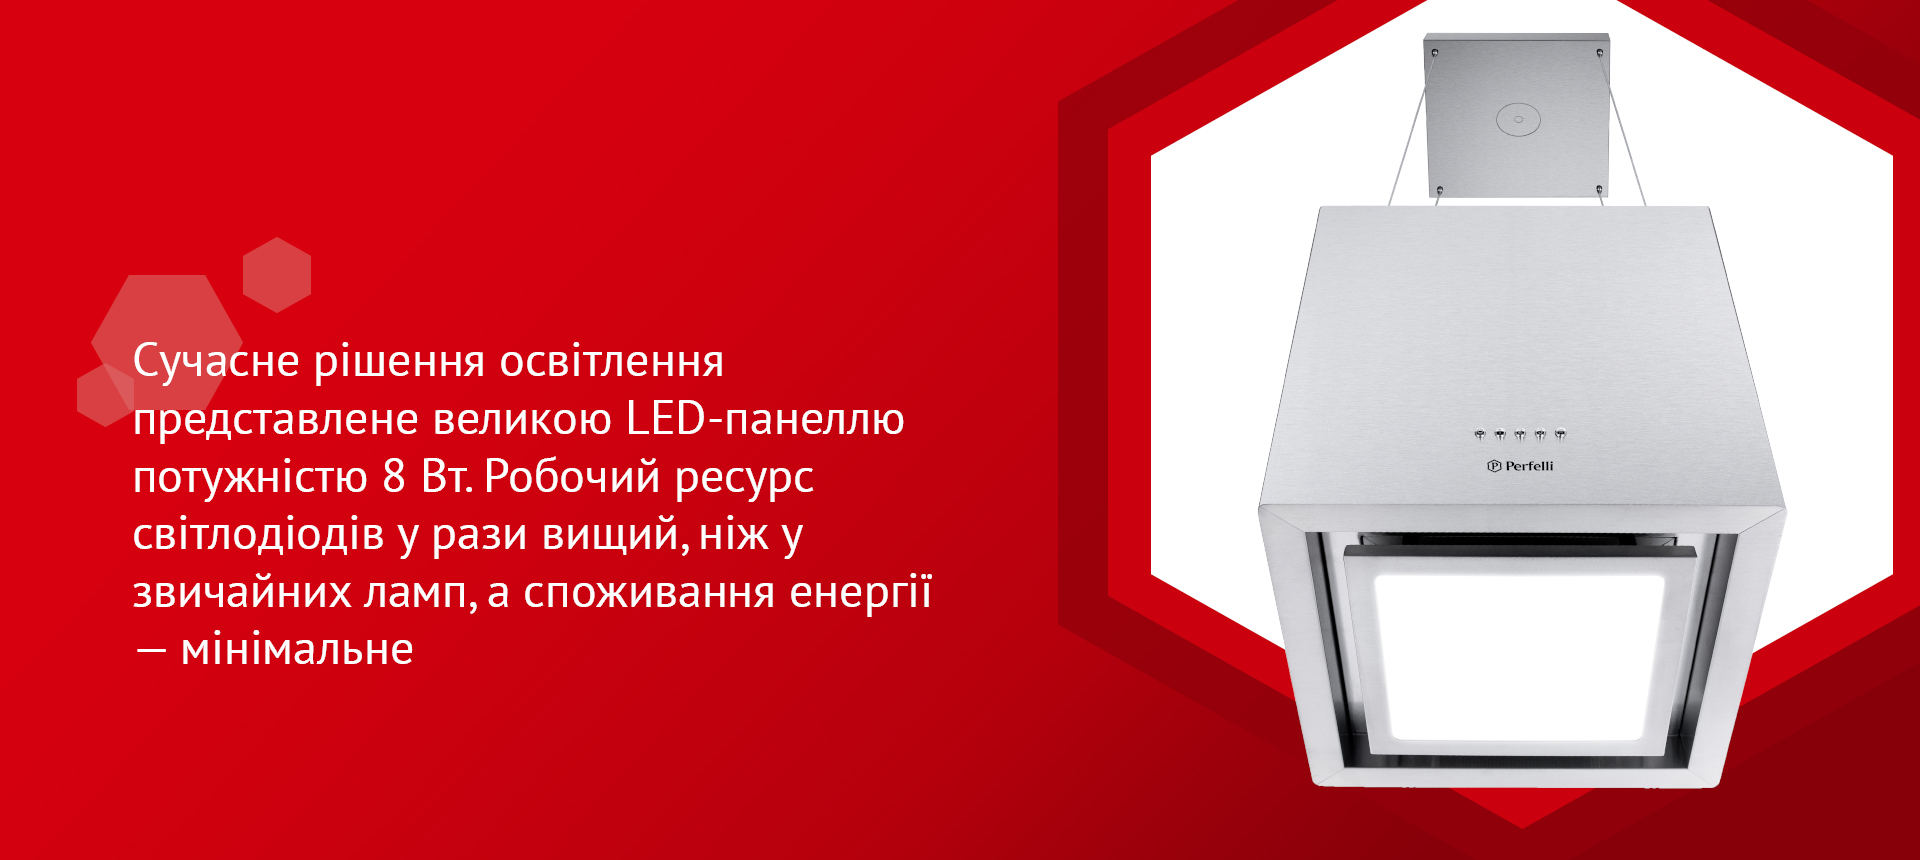 Сучасне рішення освітлення представлене великою LED-панеллю потужністю 8 Вт. Робочий ресурс світлодіодів у рази вищий, ніж у звичайних ламп, а споживання енергії – мінімальне